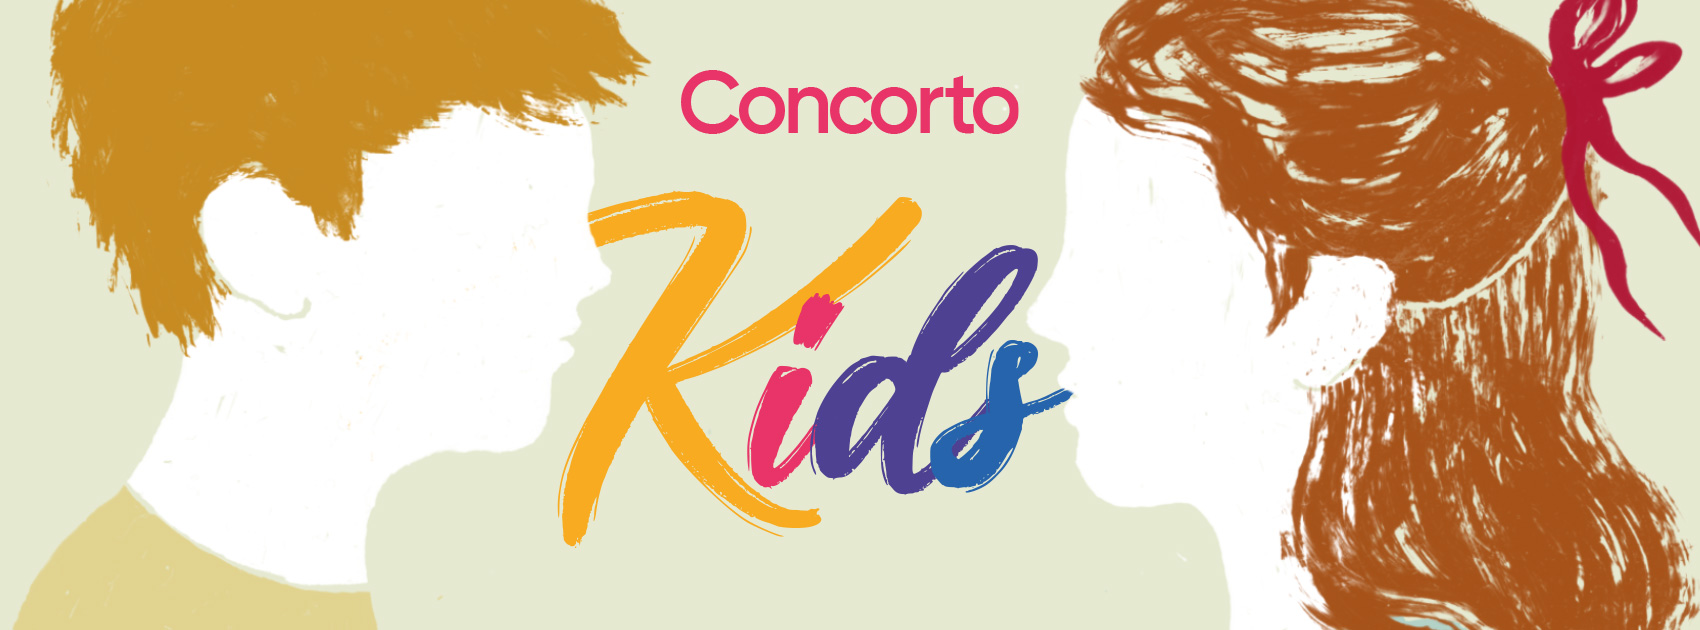 CONCORTO KIDS